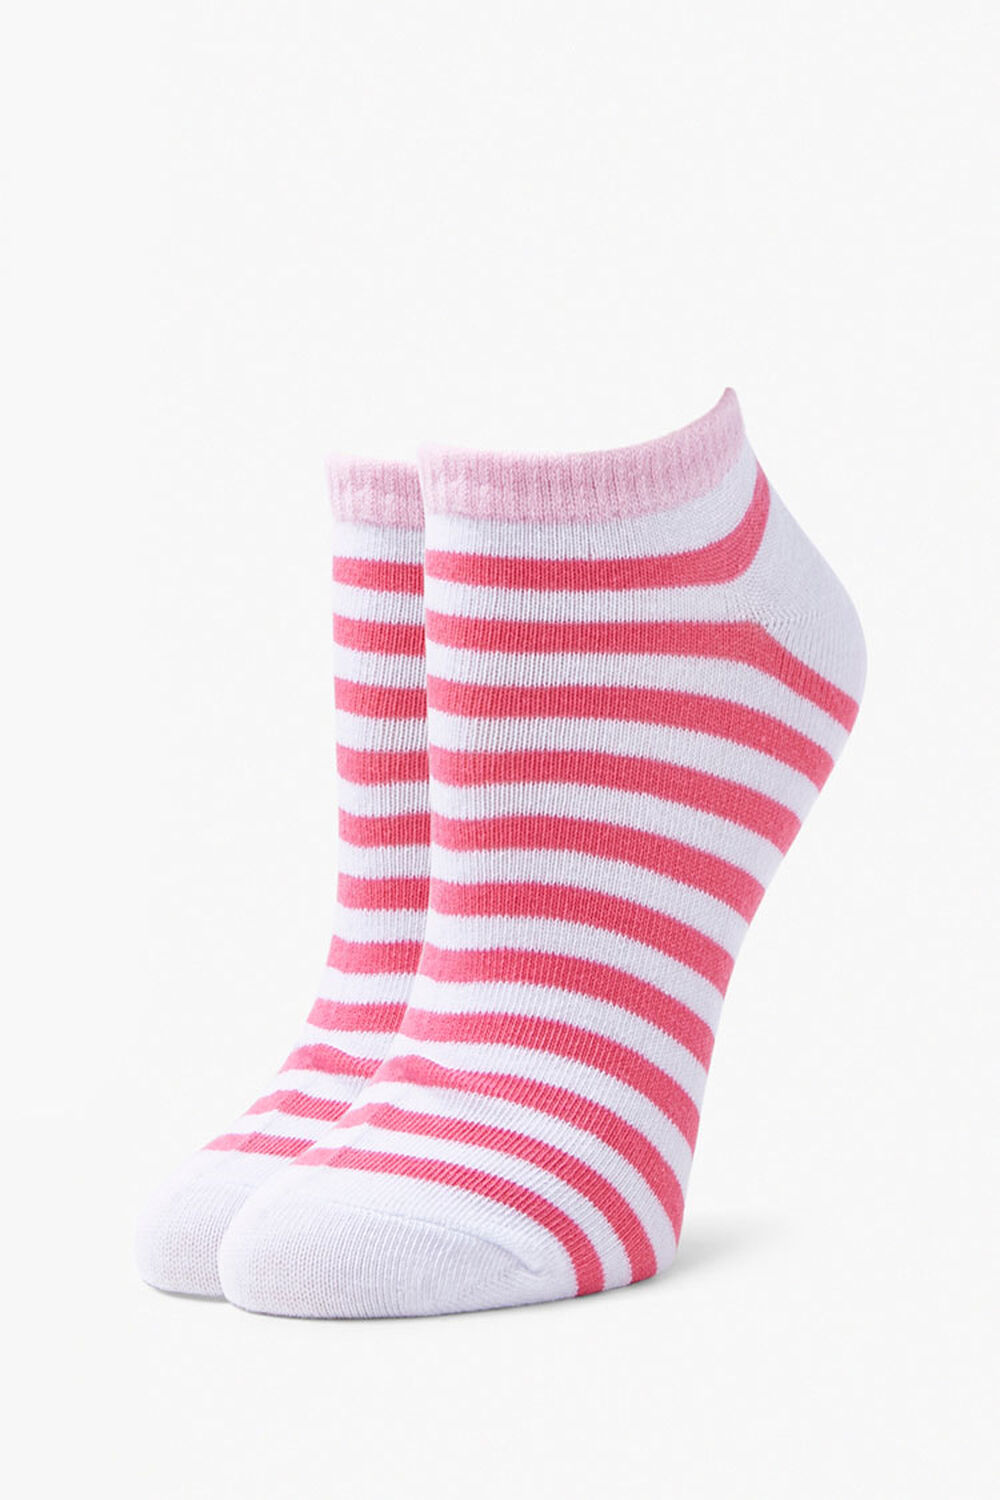 Heart Ankle Socks - 5 Pack